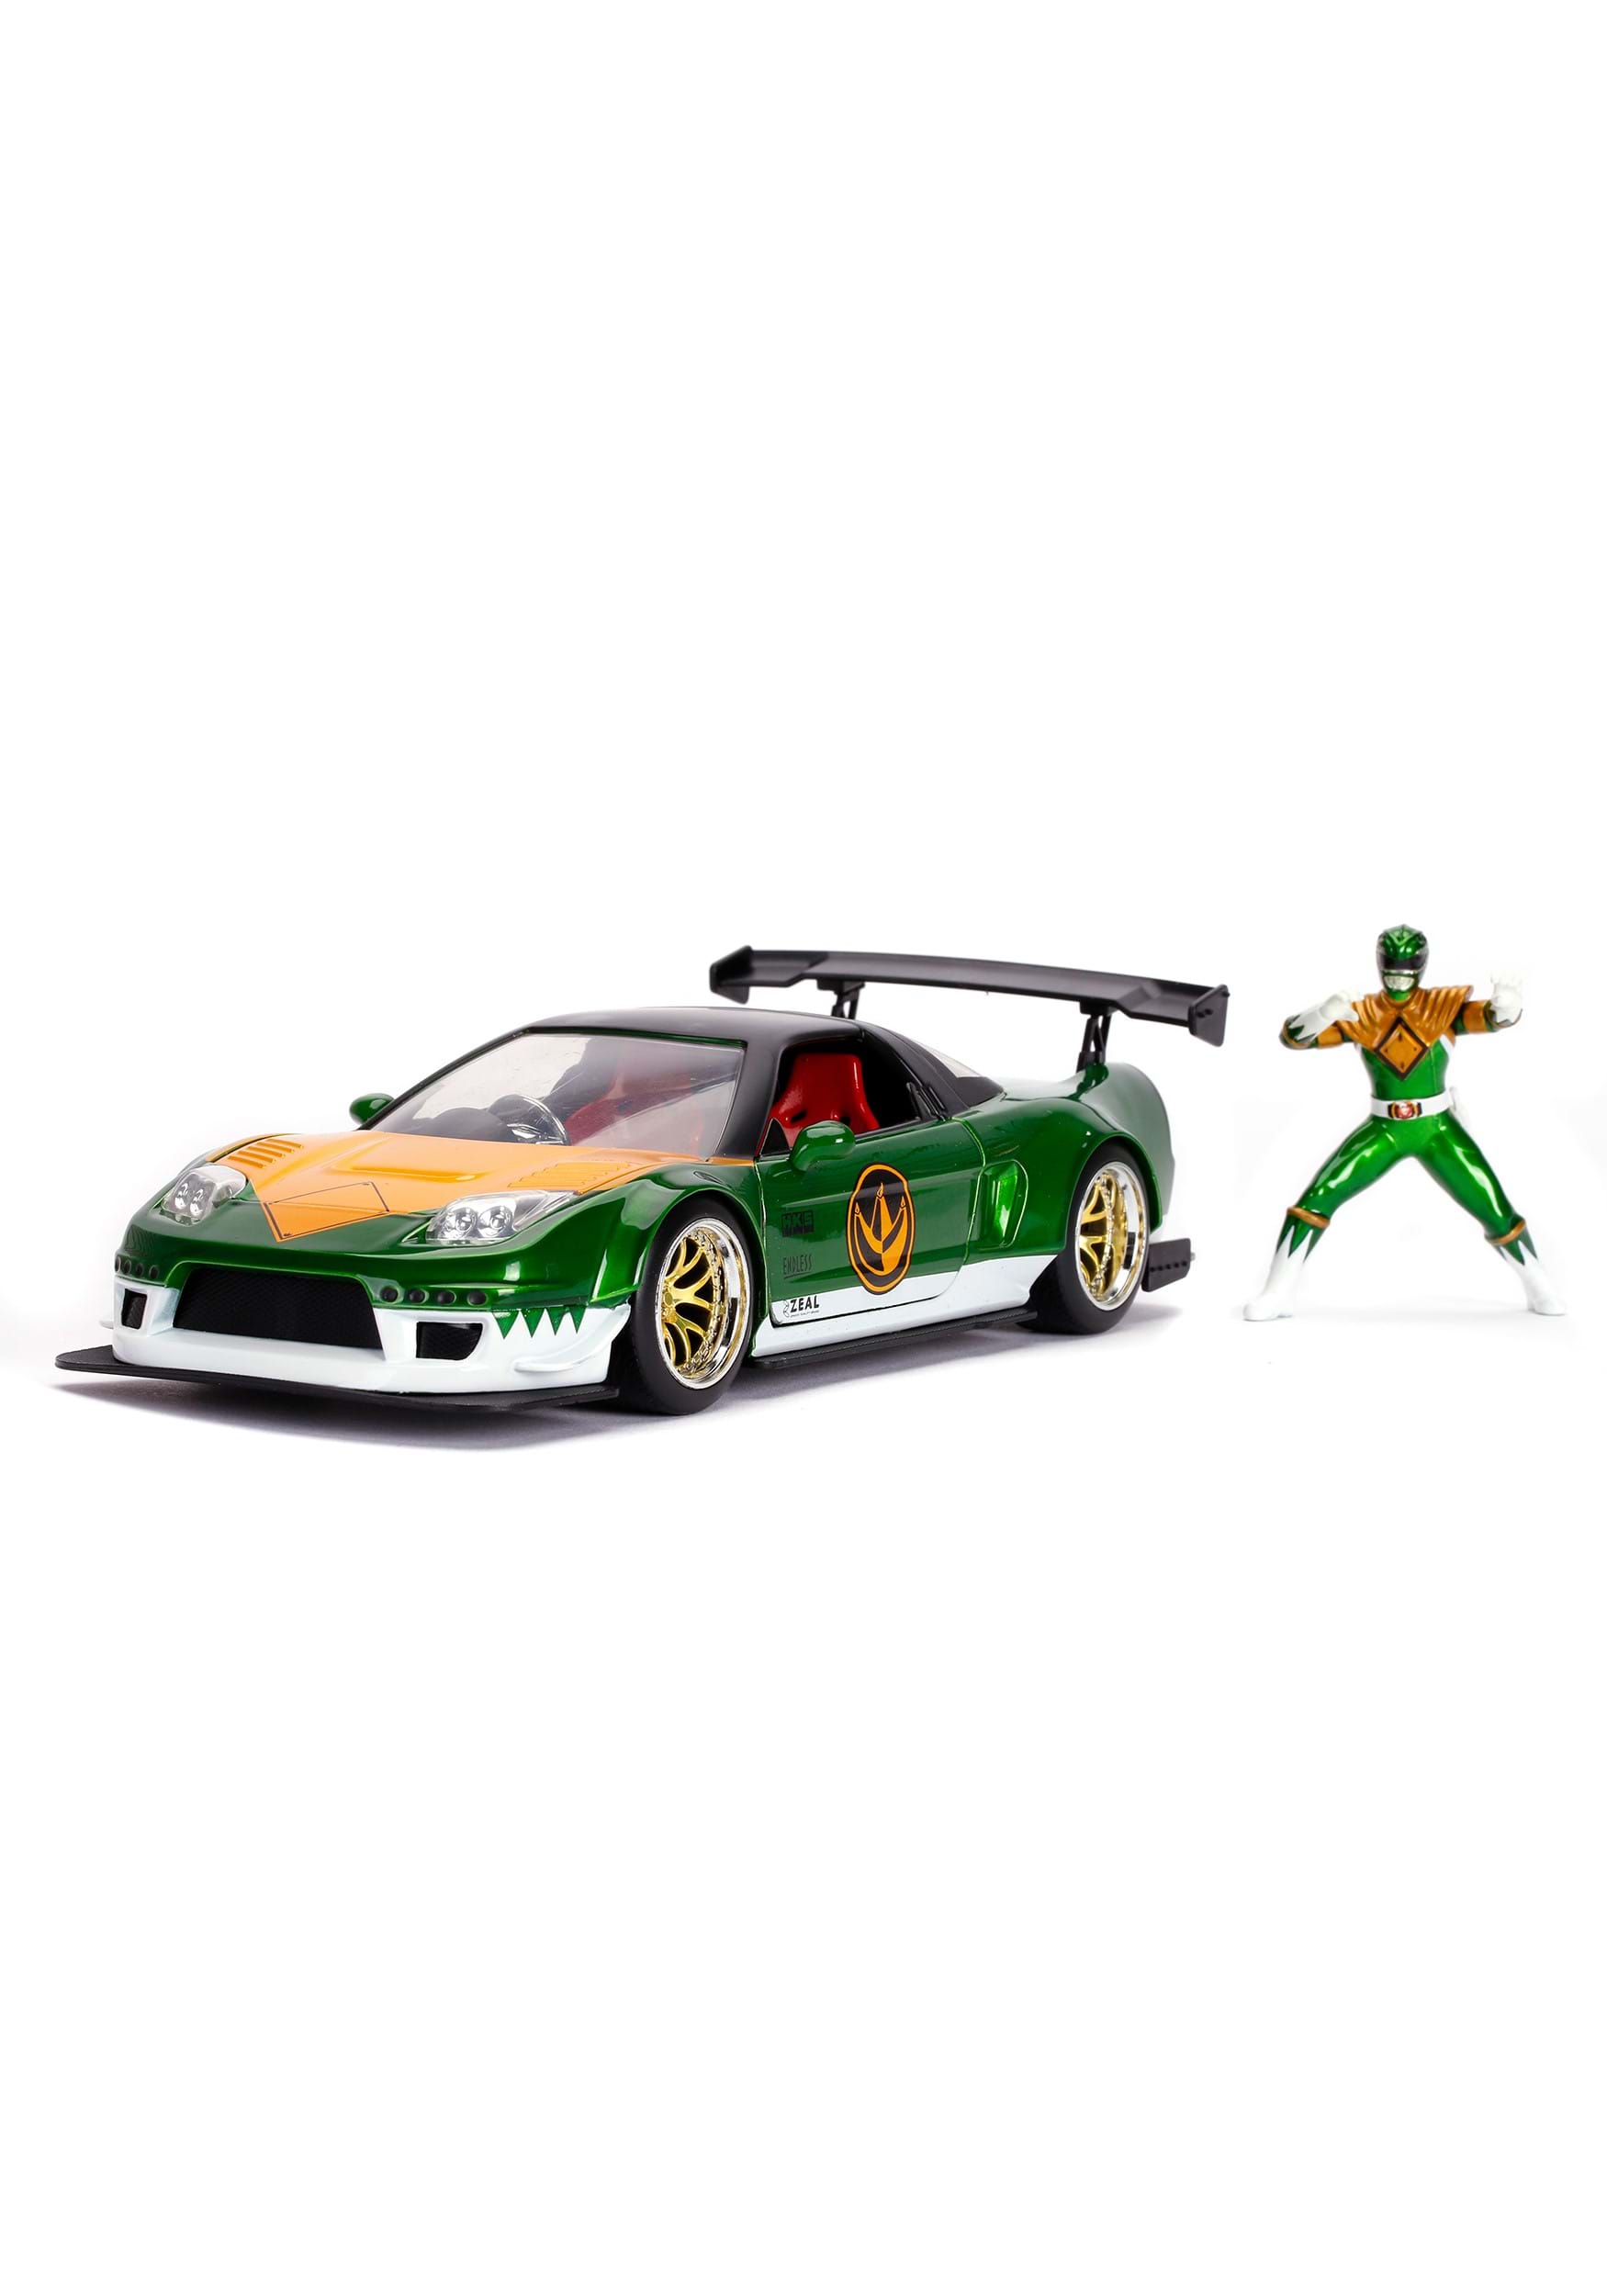 1:24 Scale Power Rangers 02 Honda NSX & Green Ranger Figure